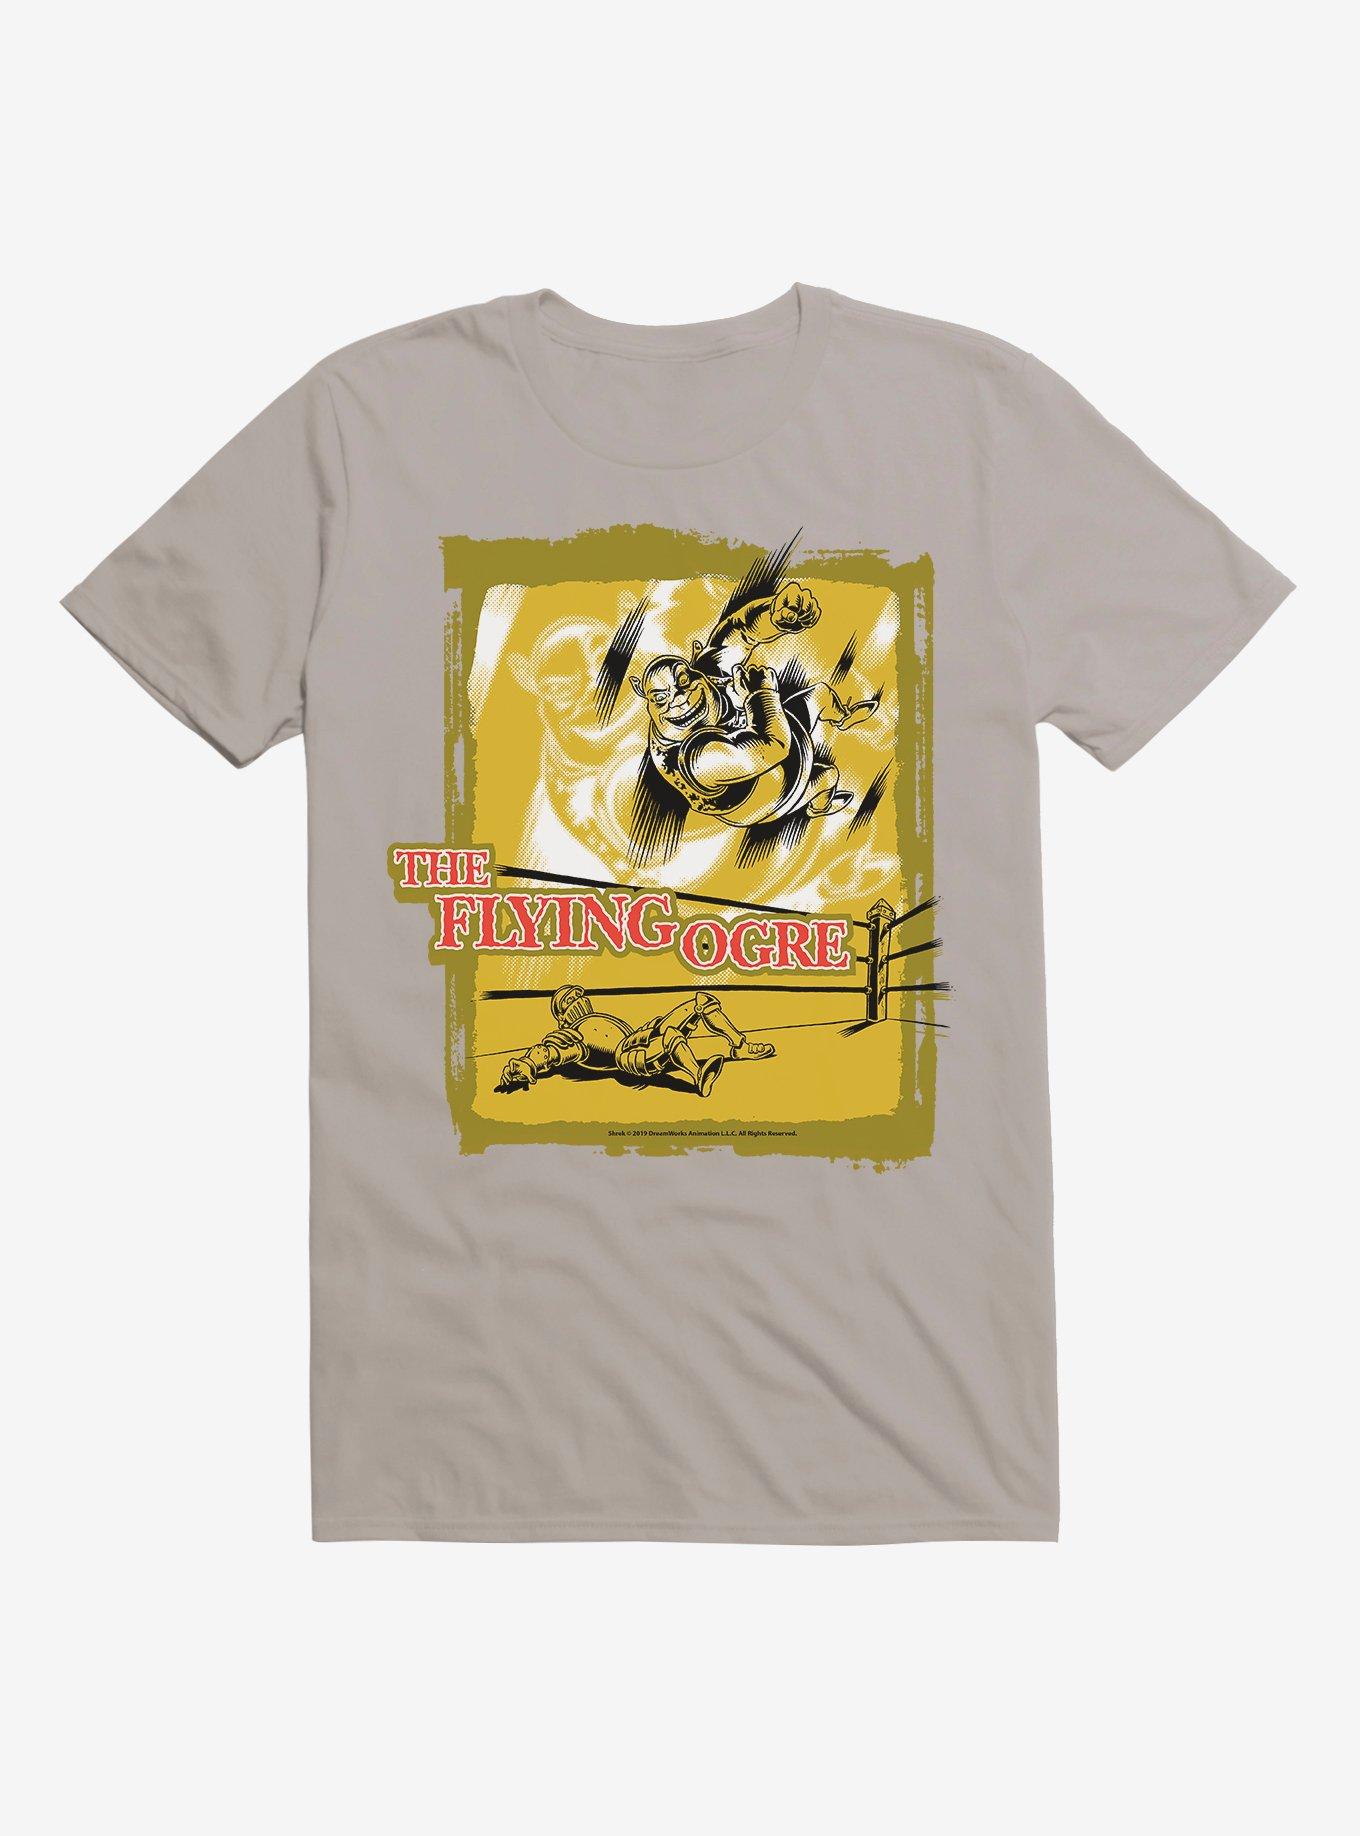 Shrek Flying Ogre Poster T-shirt | BoxLunch